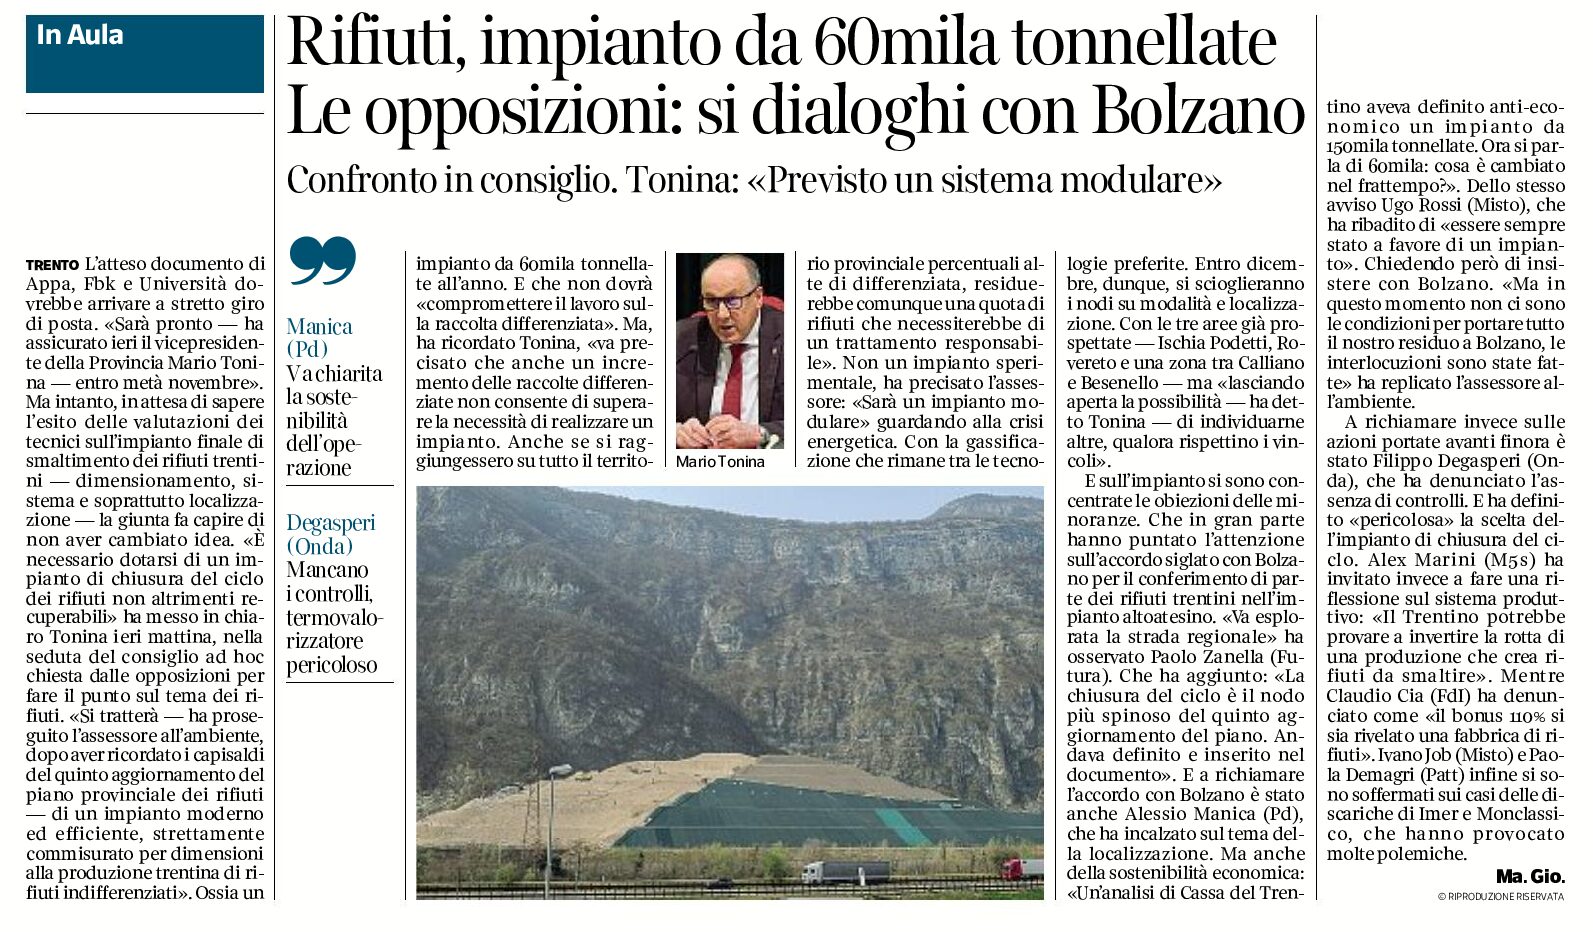 Trentino, rifiuti: impianto da 60mila tonnellate, previsto un sistema modulare. Le opposizioni “si dialoghi con Bolzano”